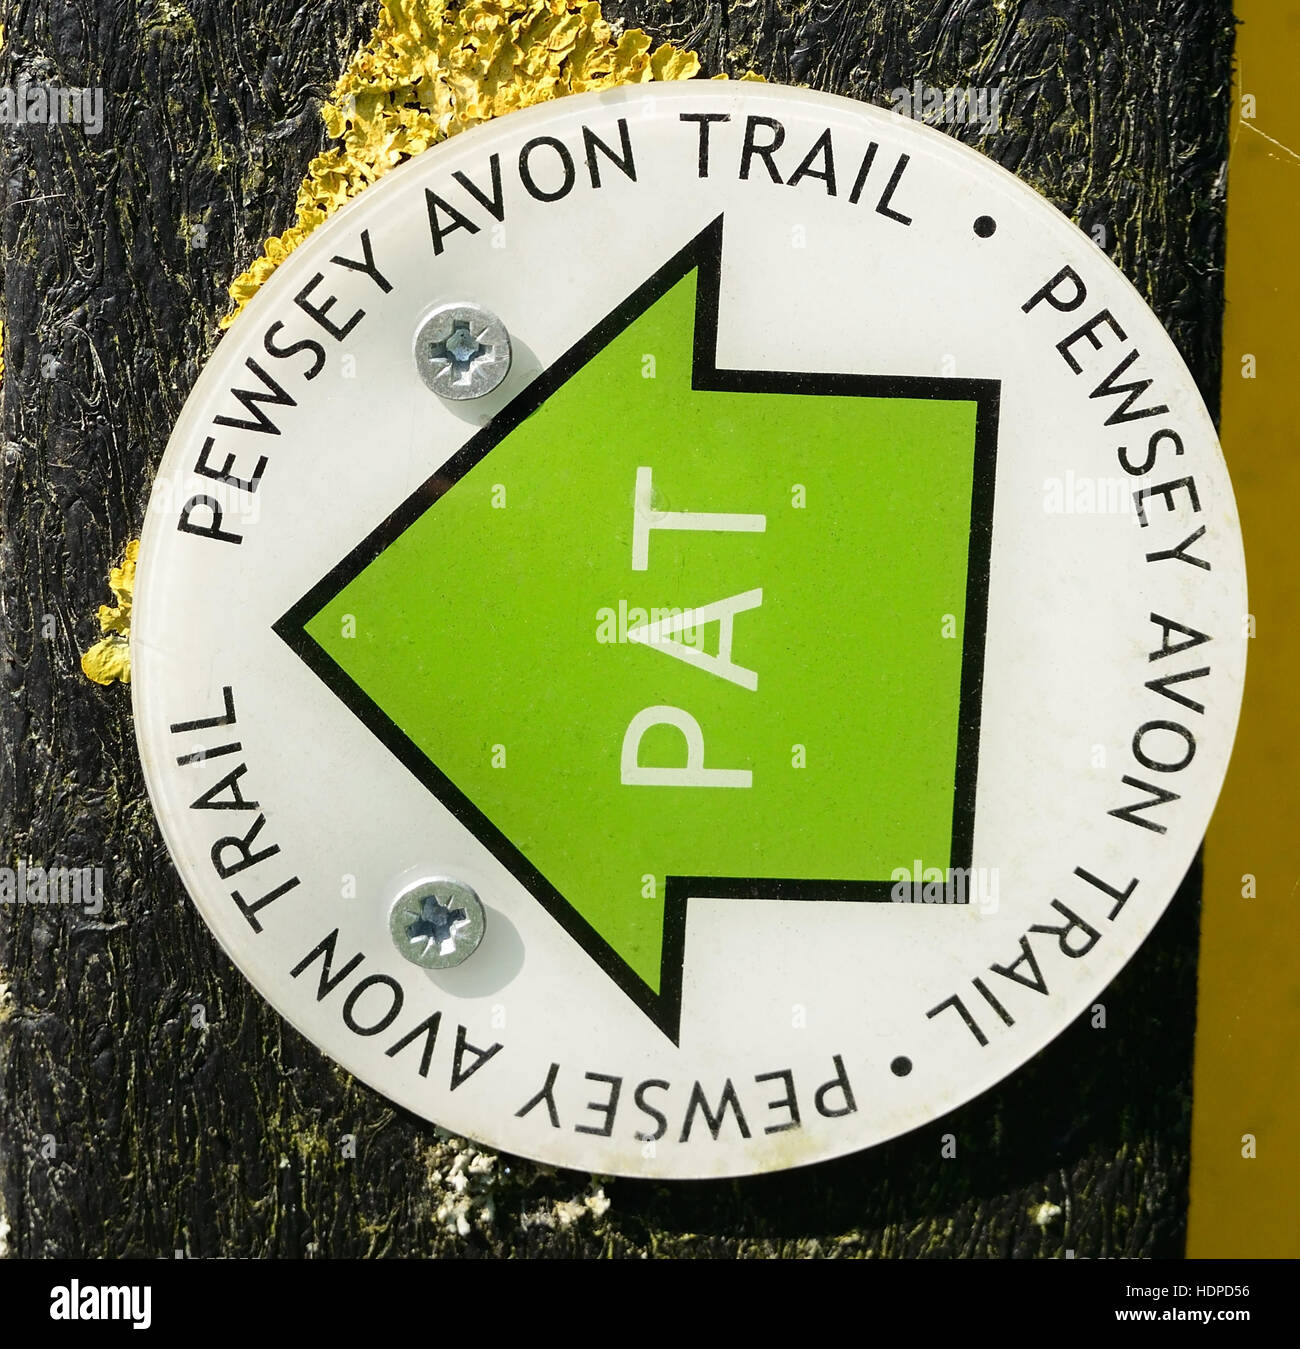 Waymarker per la Pewsey Avon Trail, un sentiero pedonale che collega Pewsey a Salisbury lungo il fiume Avon valley. Foto Stock